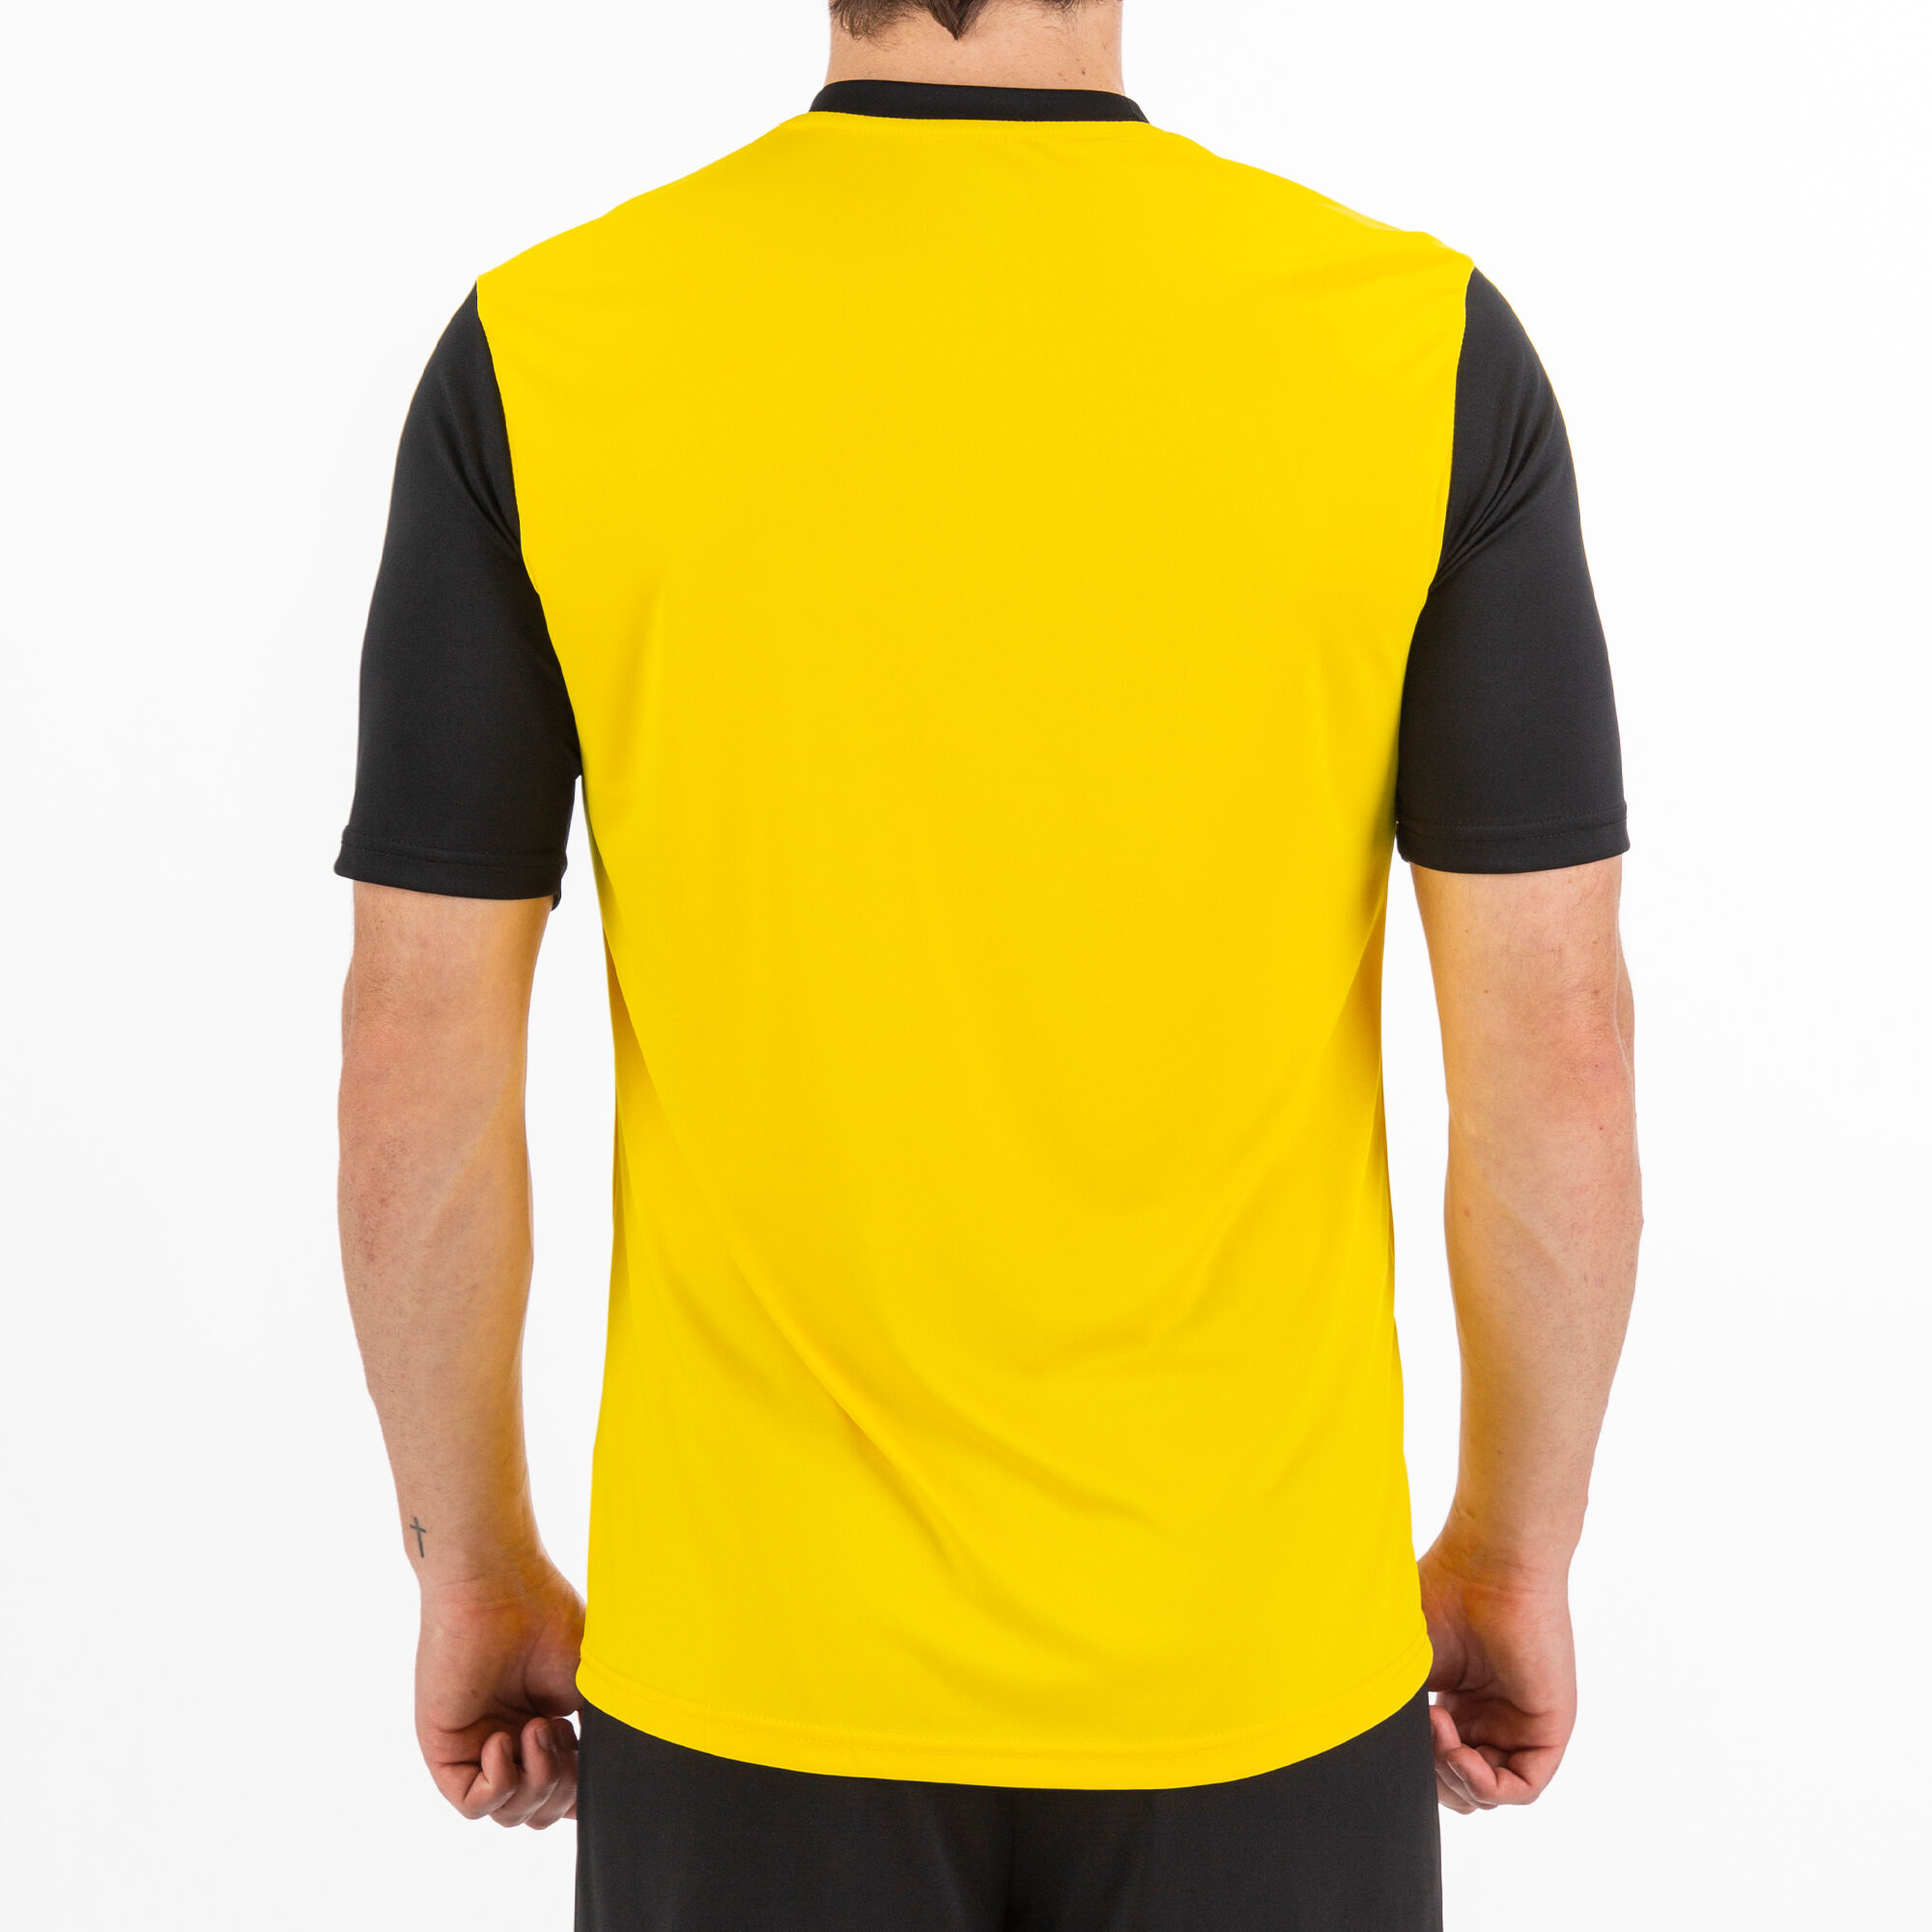 Camiseta manga corta hombre Winner amarillo negro